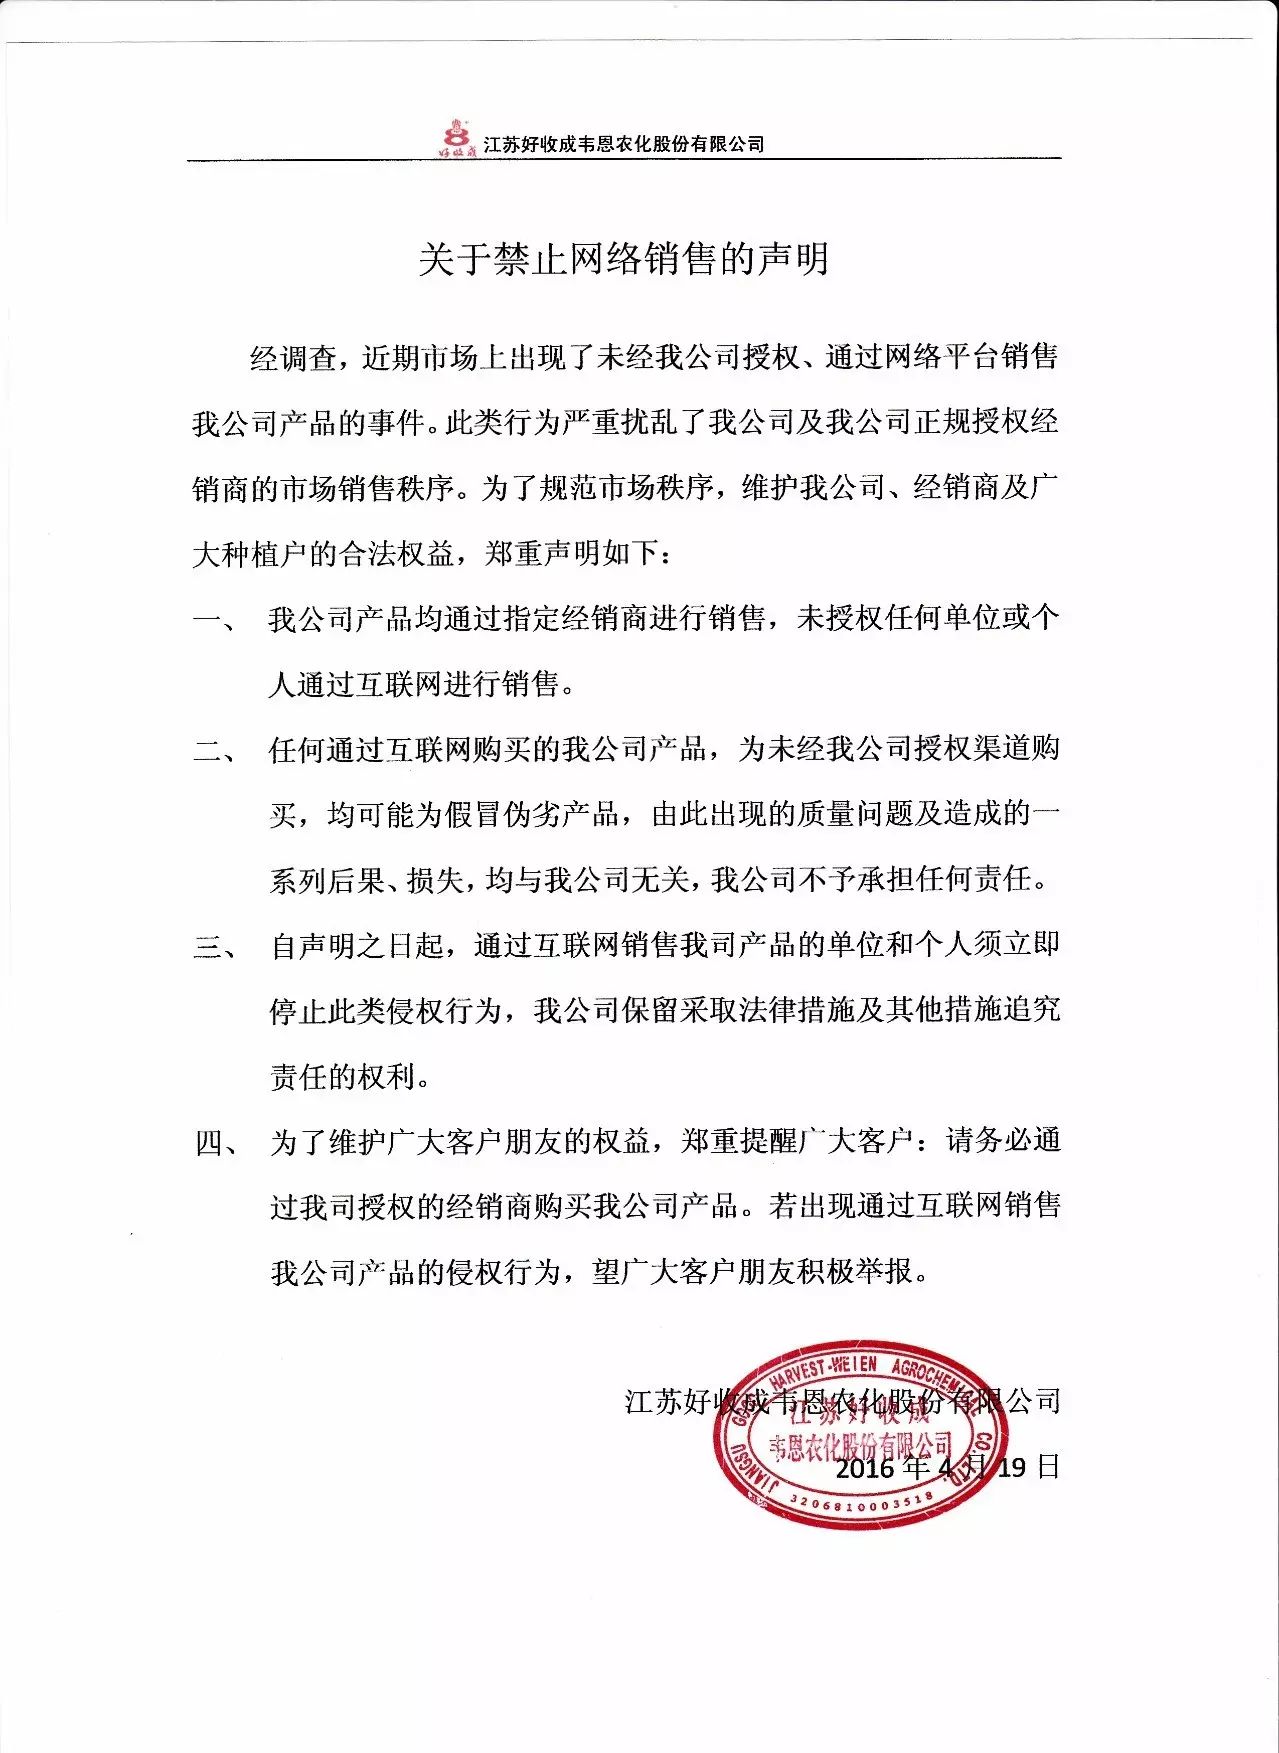 江苏好收成韦恩农化股份有限公司关于禁止网络销售声明